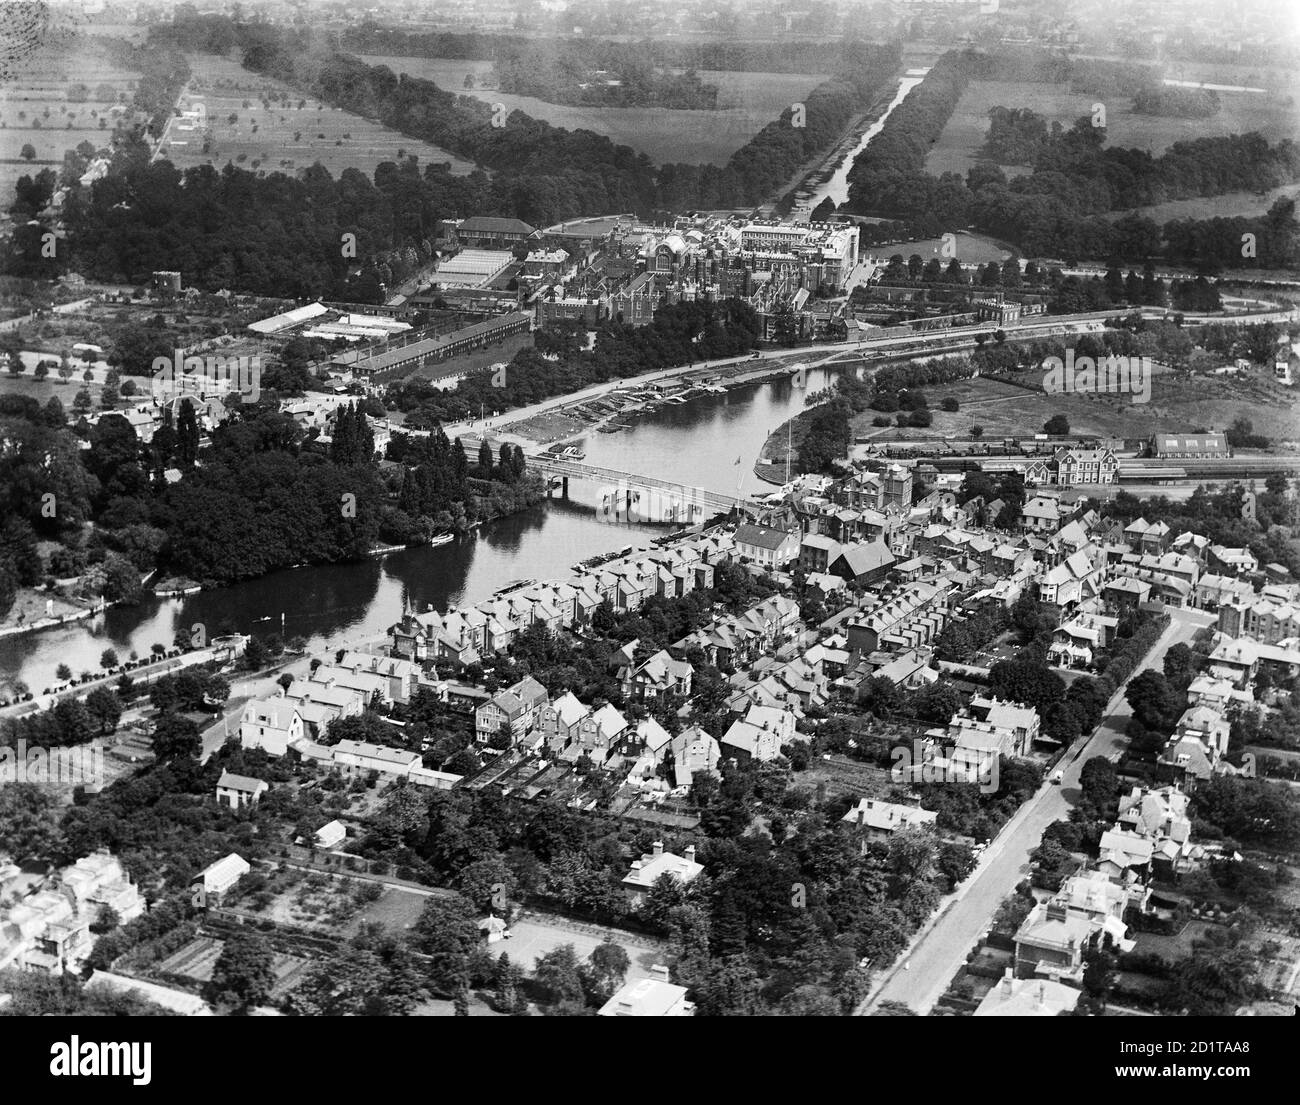 HAMPTON COURT, Richmond-upon-Thames, London. Luftaufnahme des Hampton Court Palace, der Gärten und der Themse. Fotografiert im Jahr 1920. Aerofilms Collection (siehe Links). Stockfoto